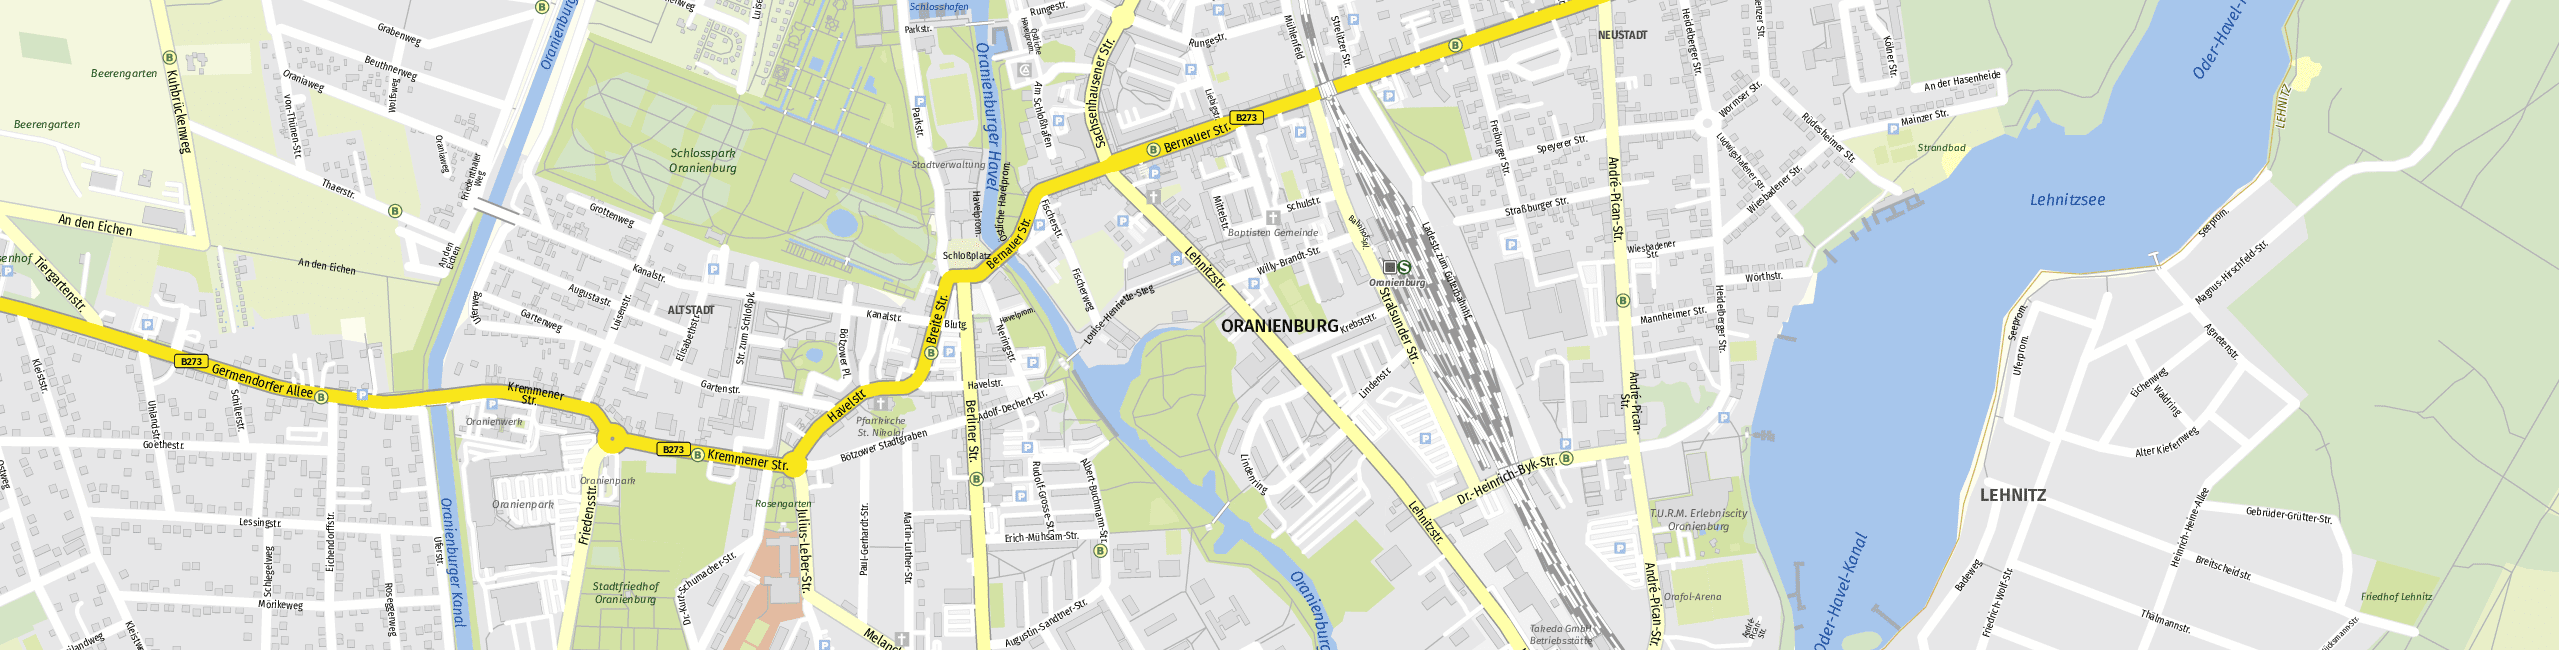 Stadtplan Oranienburg zum Downloaden.